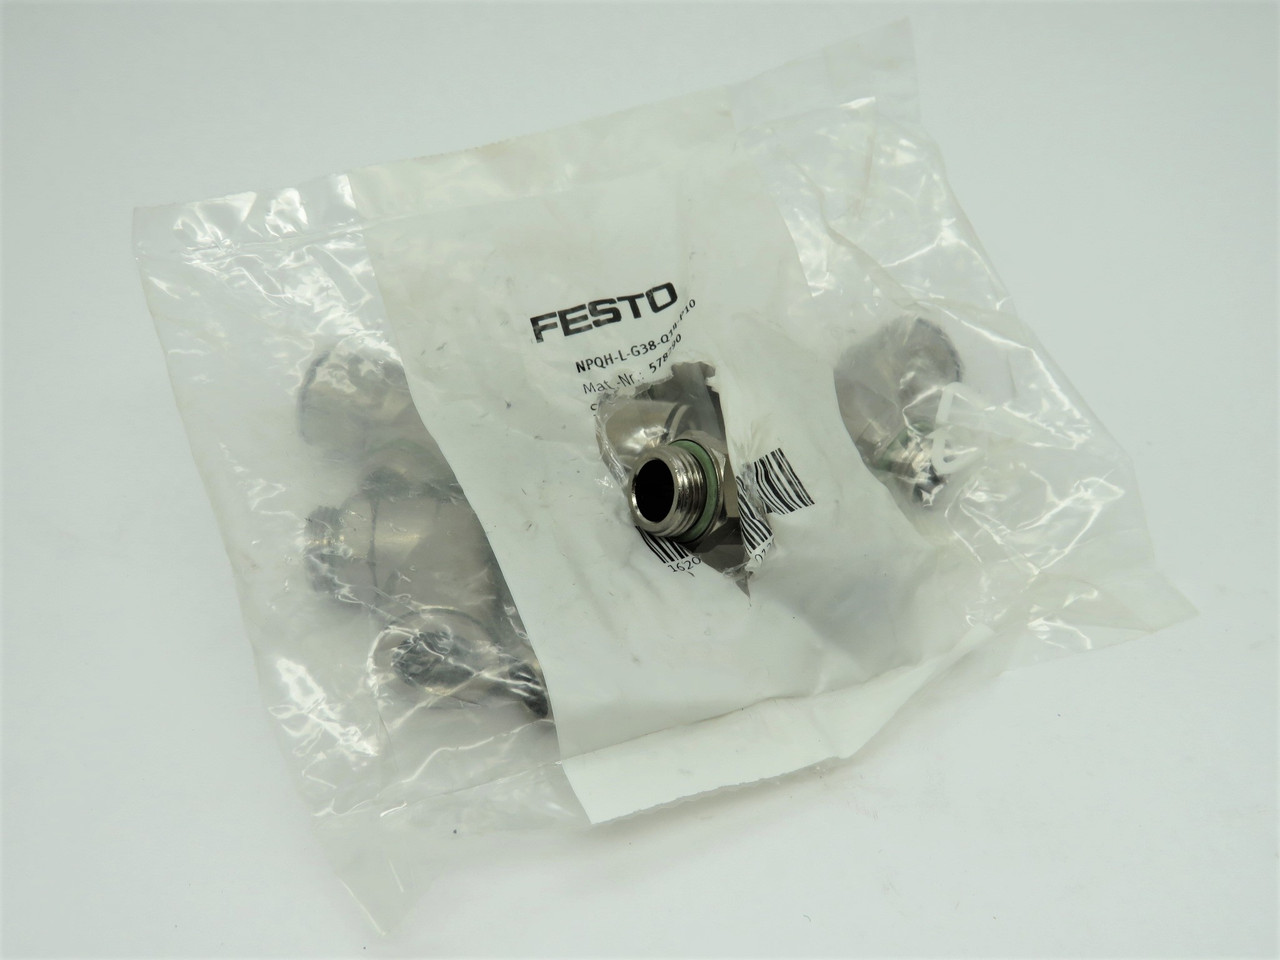 Festo 578290 NPQH-L-G38-Q14-P10 Brass Push-In L-Fitting G3/8 x 14mm Lot of 8 NWB